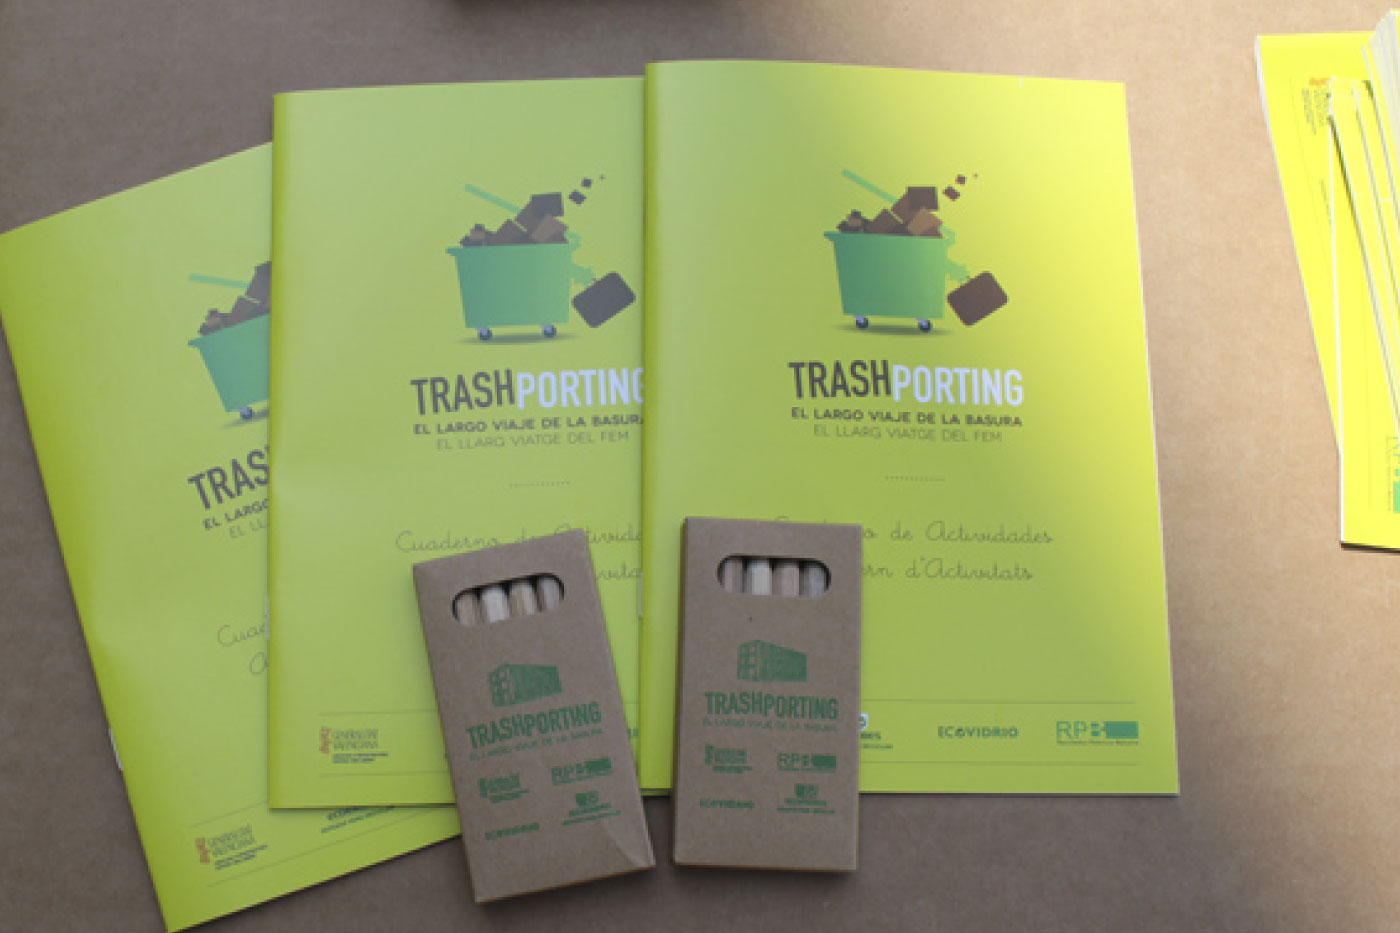 TrashPorting el largo viaje de la basura exposicion green marketing